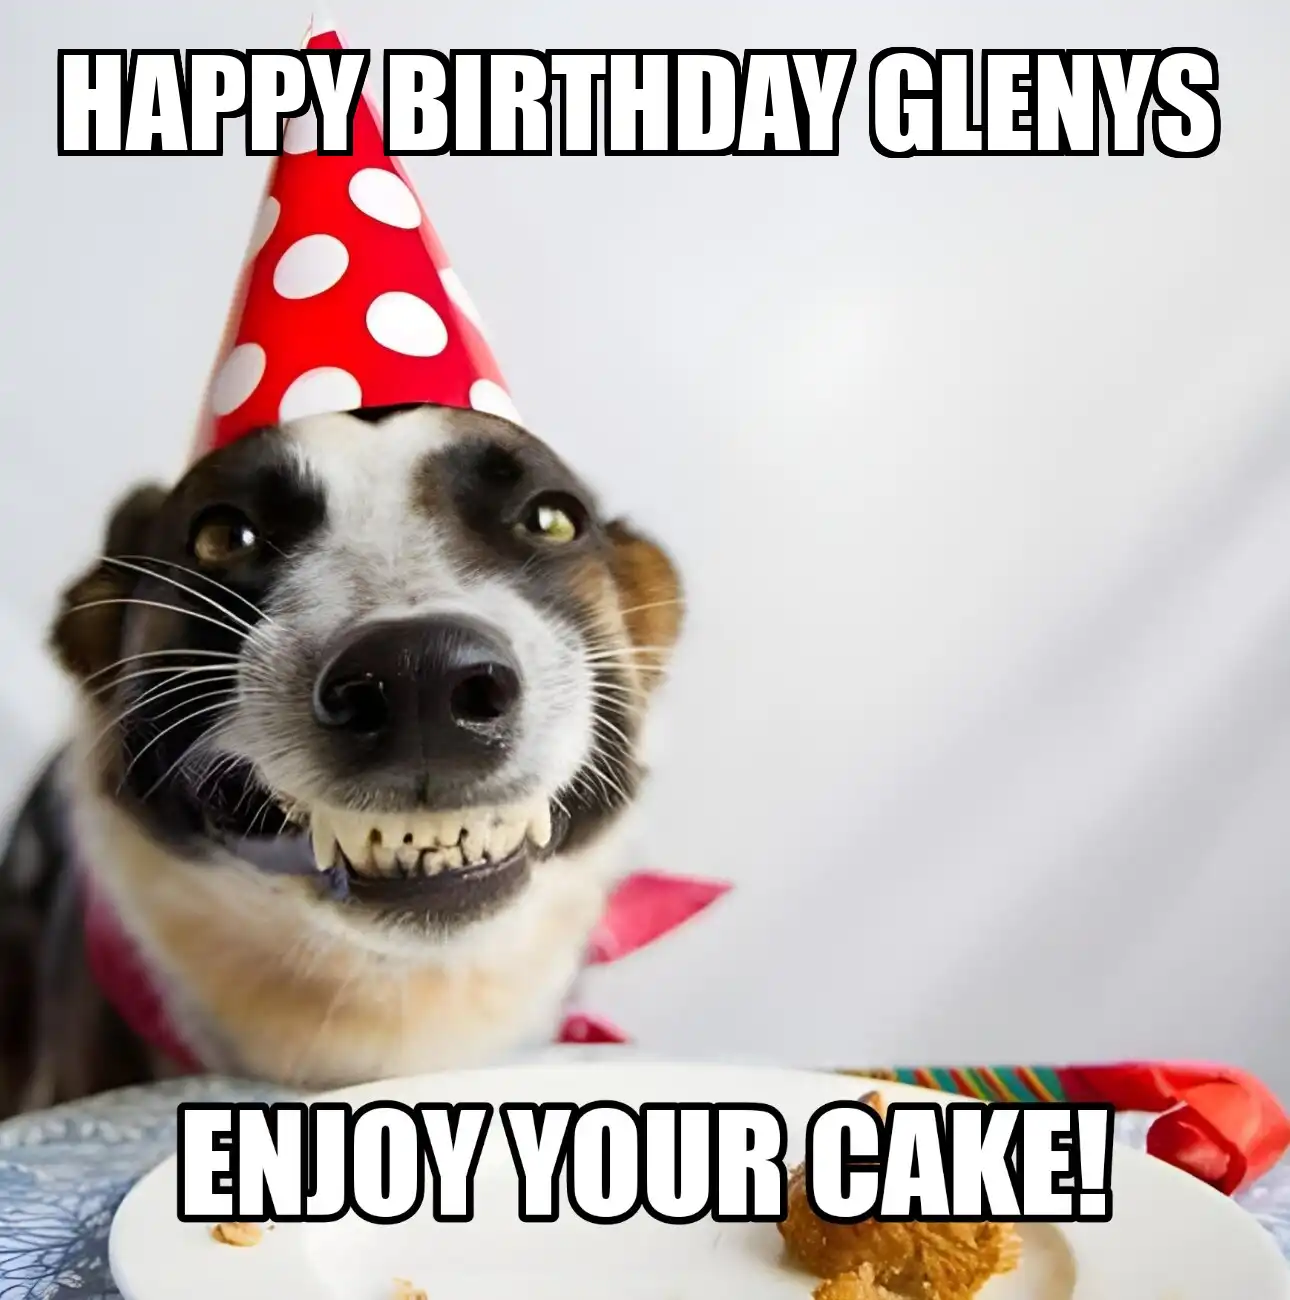 Happy Birthday Glenys Enjoy Your Cake Dog Meme